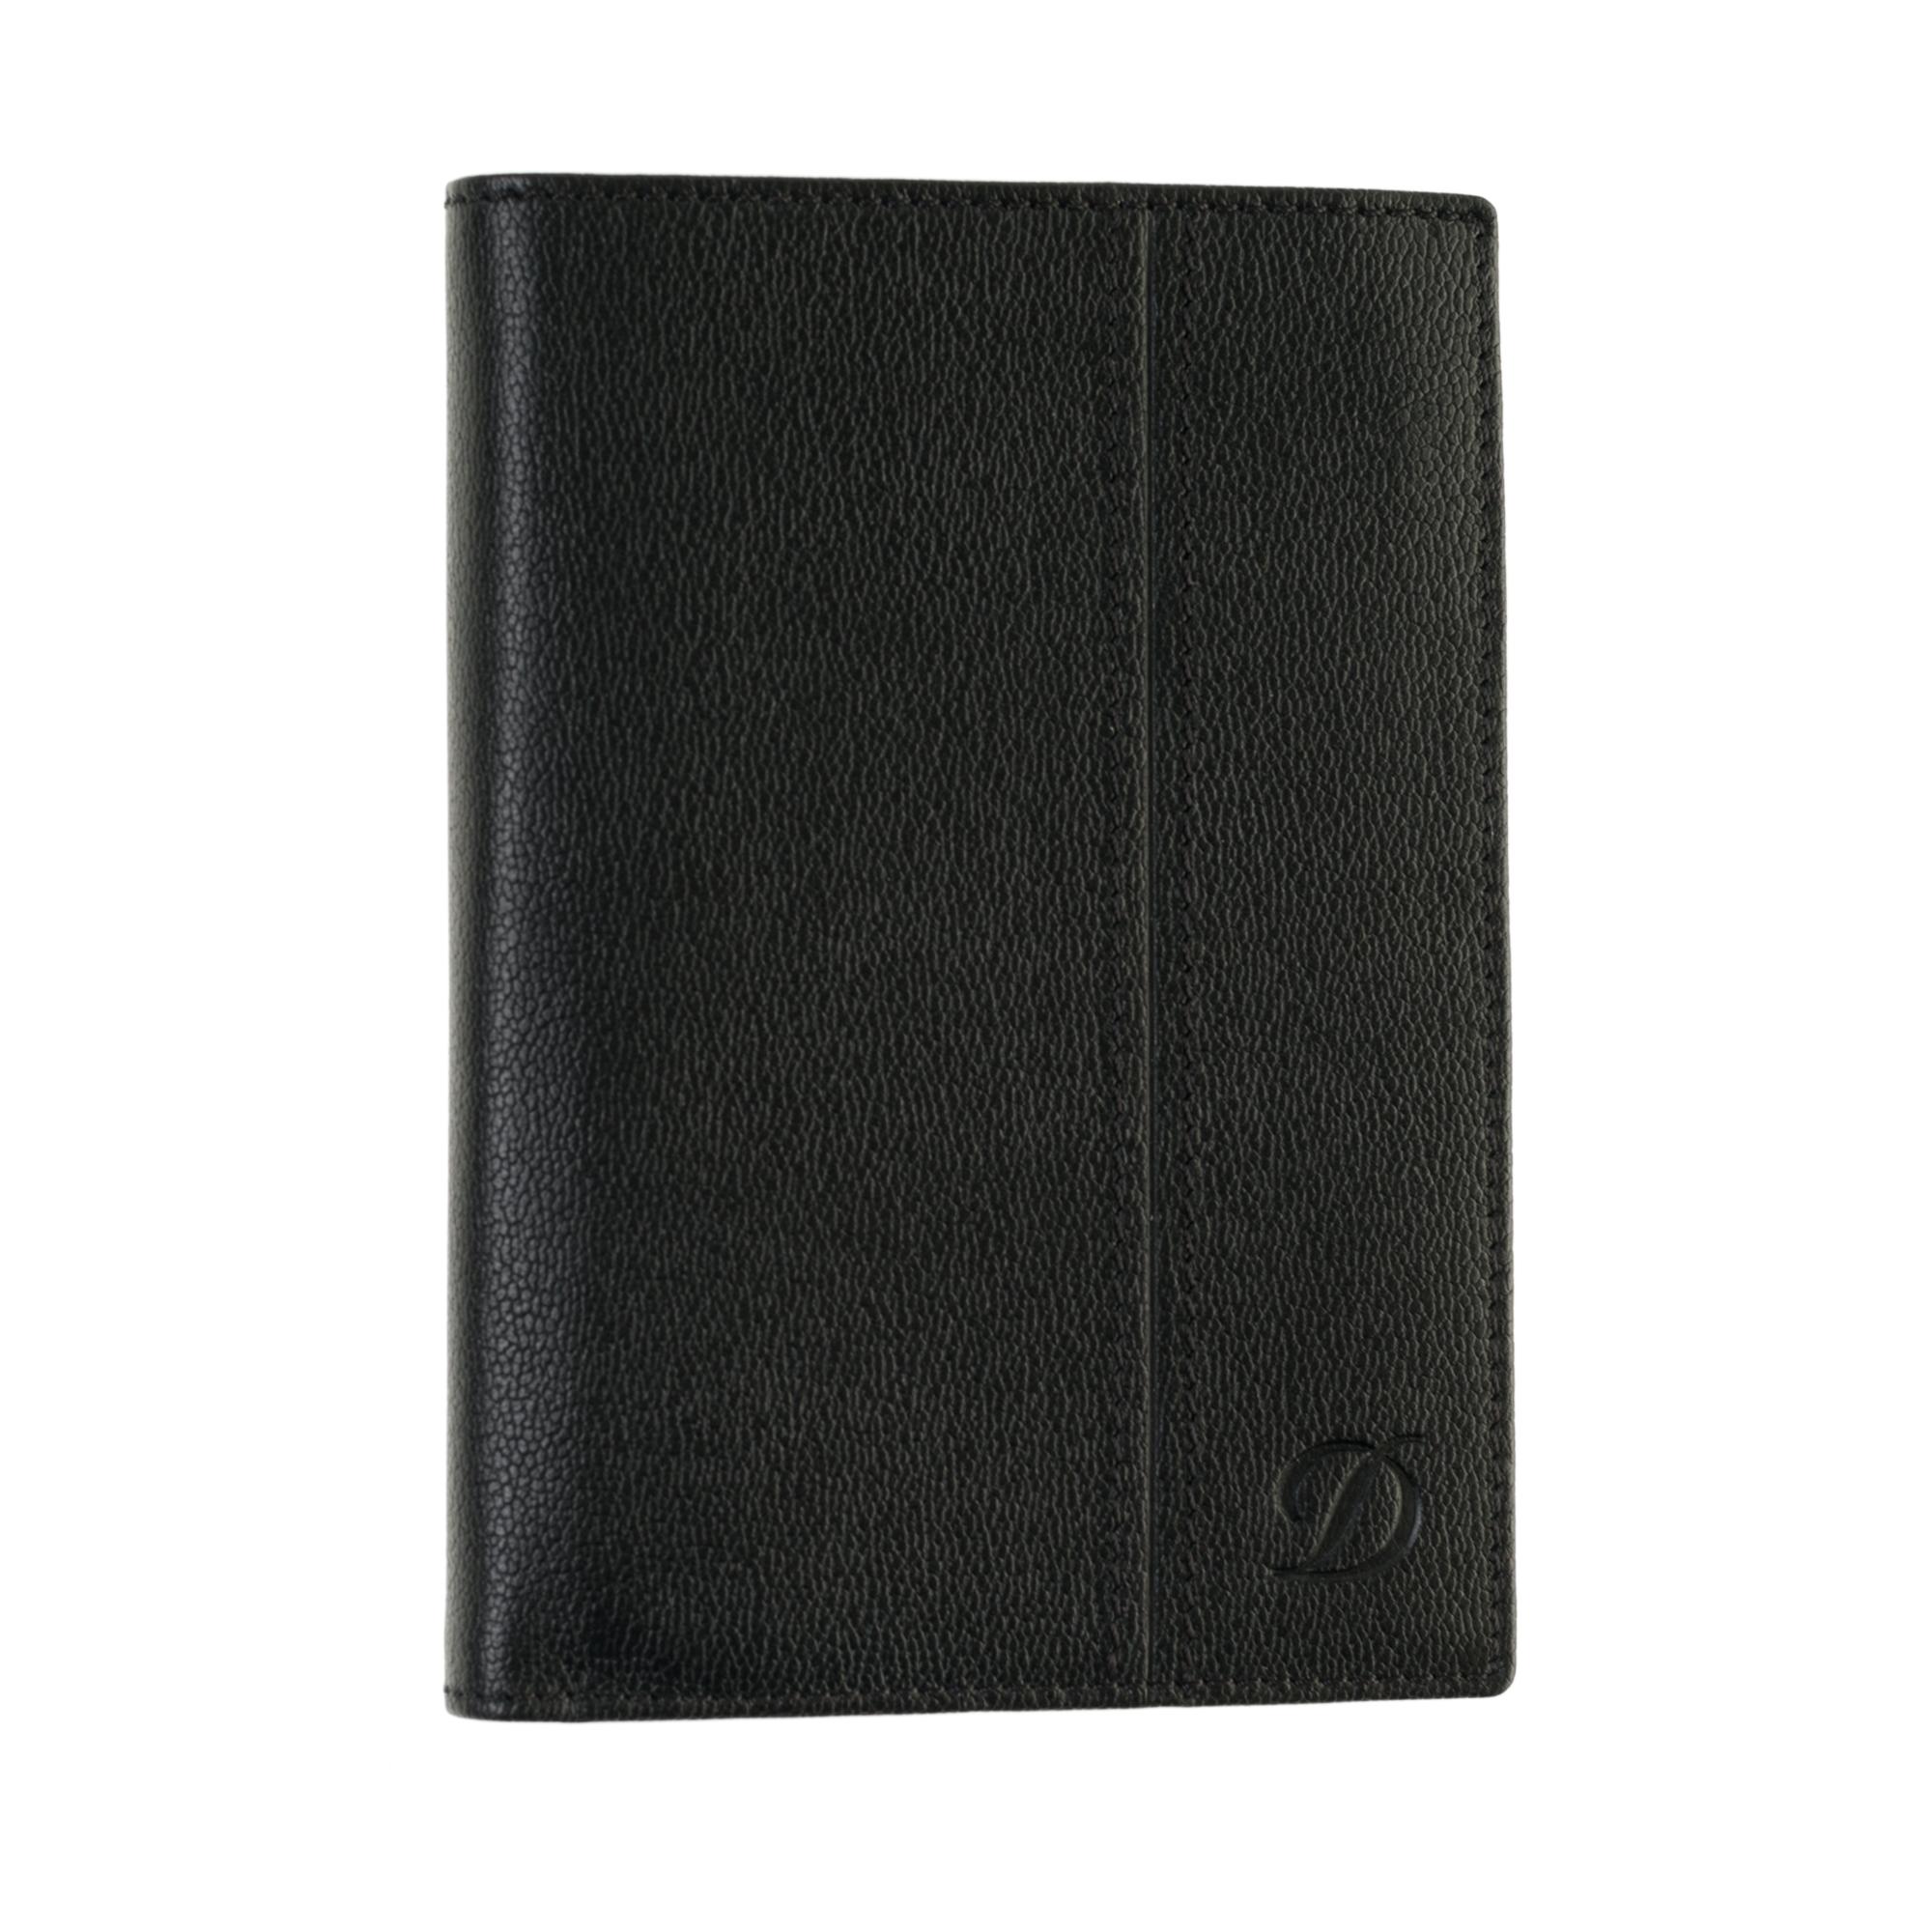 Portefeuille/ Porte-cartes S.T. DUPONT en cuir noir.

Dimensions : Hauteur : 12,5 cm - Largeur : 9 cm
En parfait état.
Vendu avec une boîte.